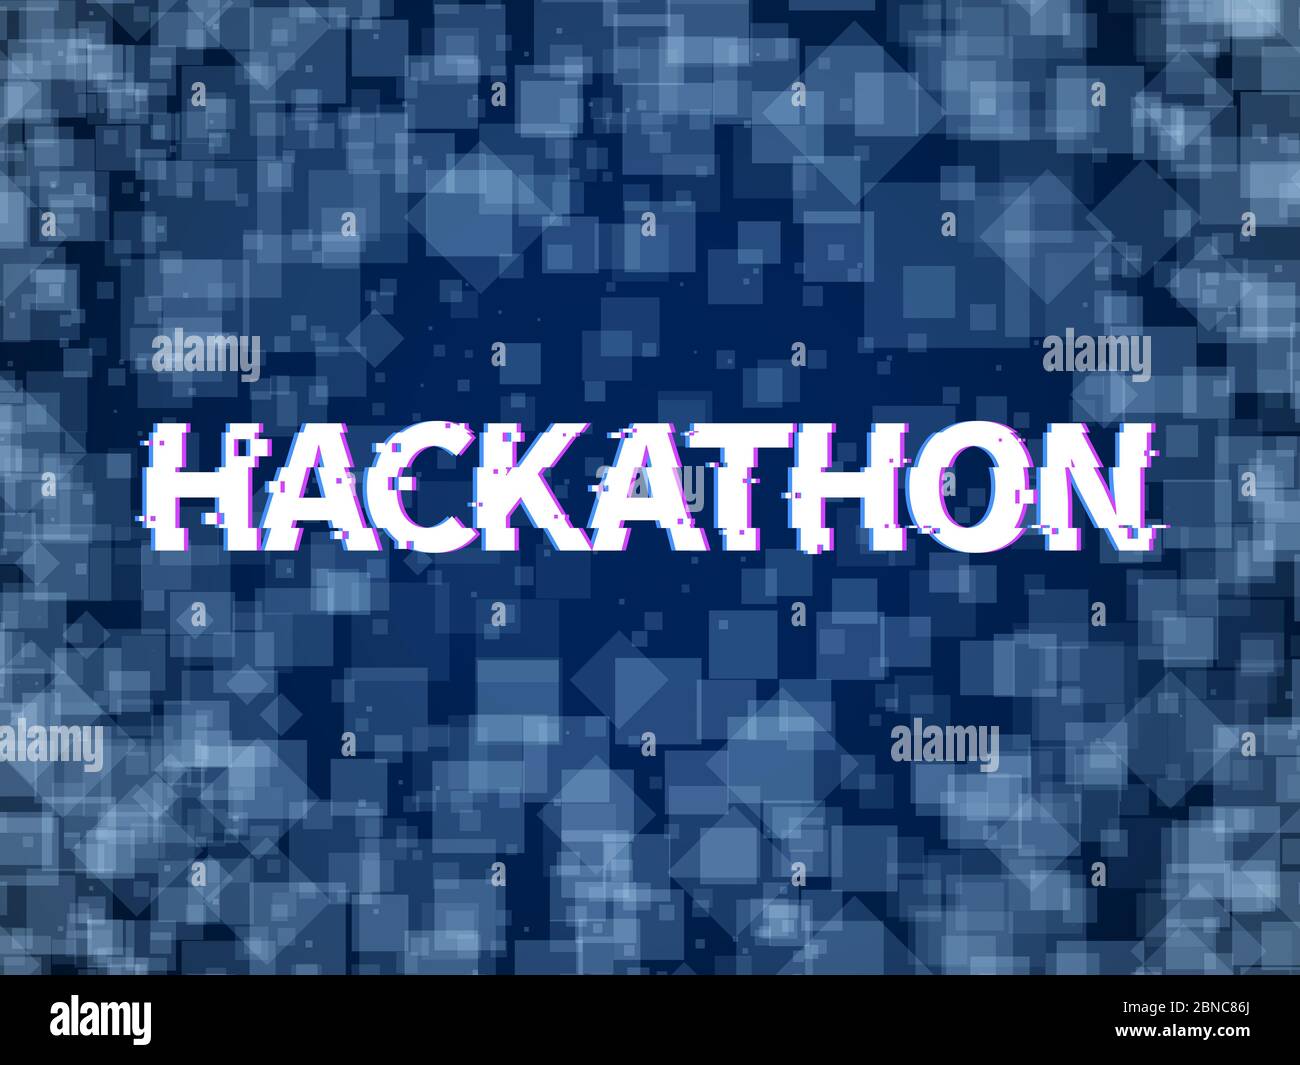 Hackathon. Programmcode, Software Marathon. Hack Tag, Hackfest oder codefest Event Vektor Hackathon Hintergrund. Illustration der Programmierung Hack Software und Programm, Glitch diffuse Banner Stock Vektor